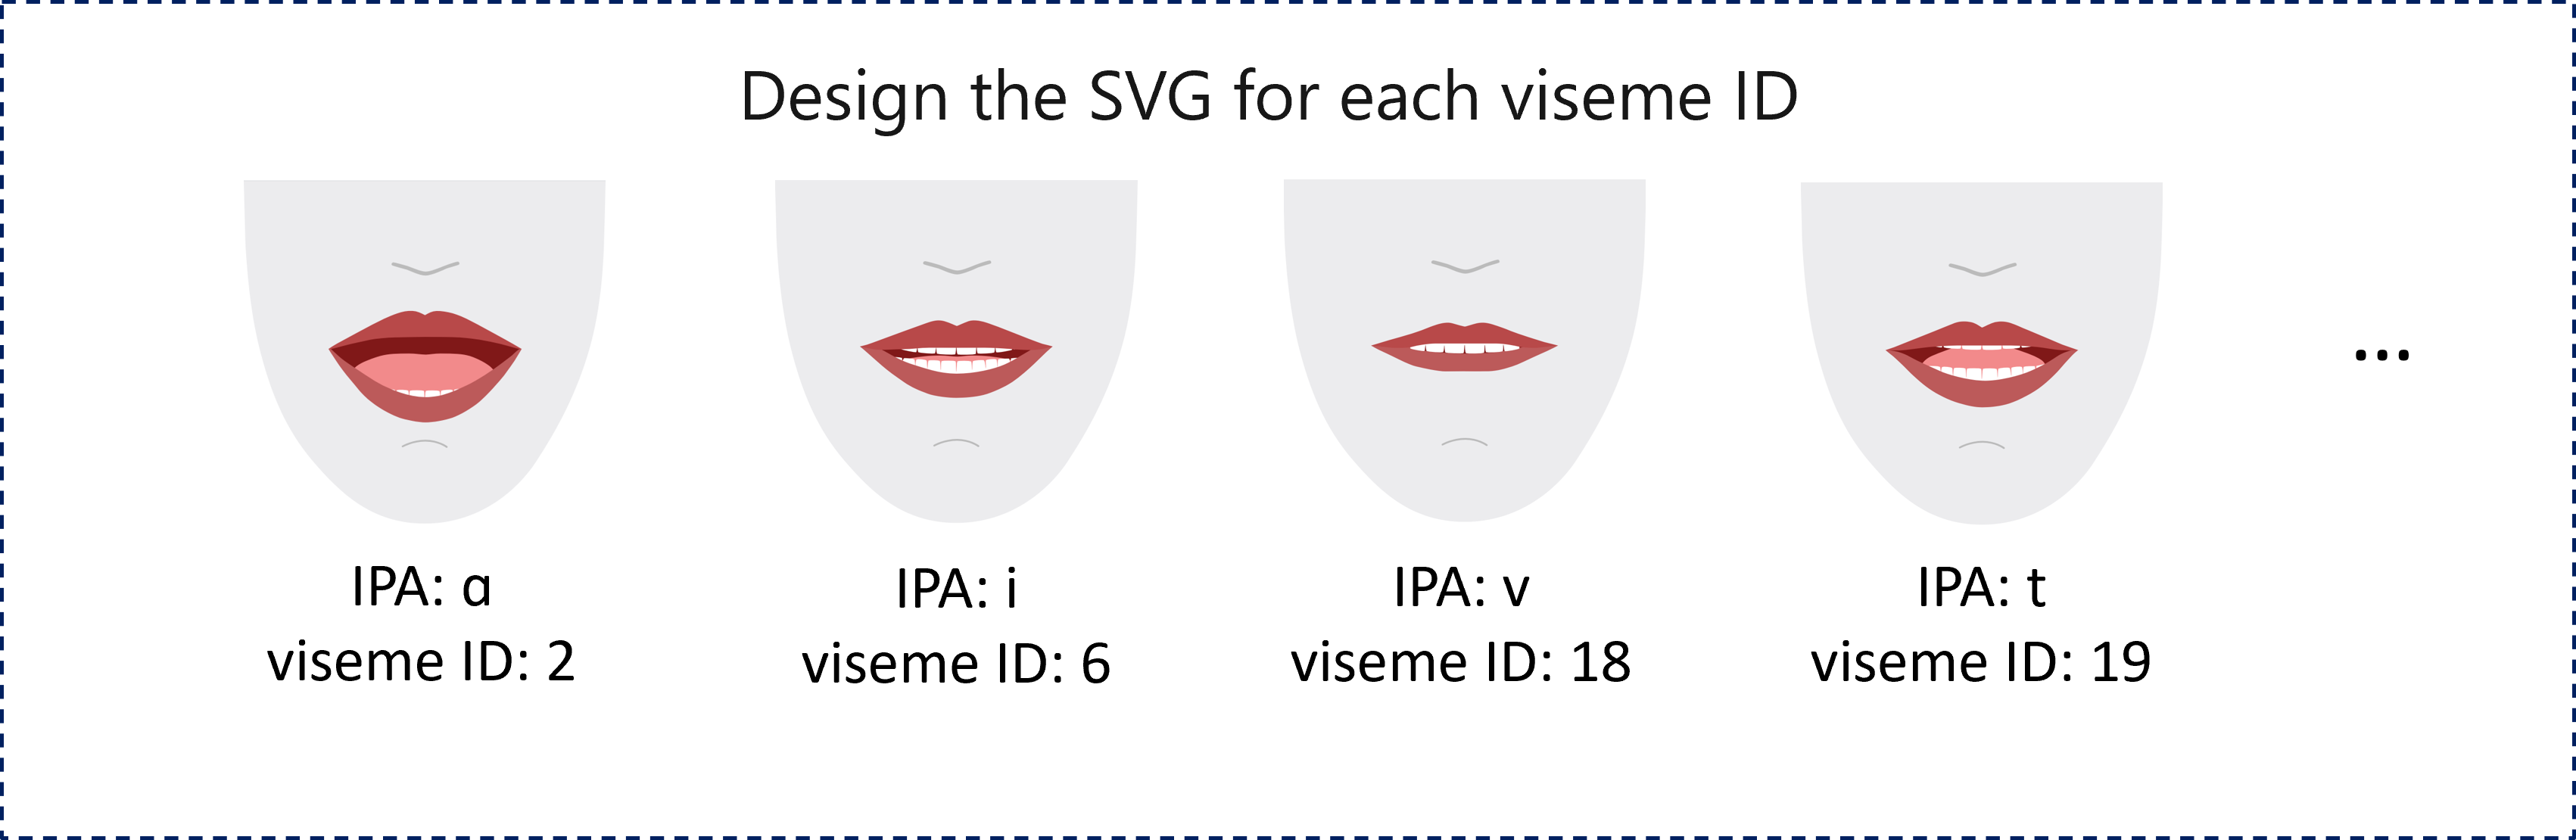 Képernyőkép egy 2D-s renderelési példáról négy piros ajakú szájról, amelyek mindegyike egy másik viseme-azonosítót jelöl, amely megfelel egy fonálnak.